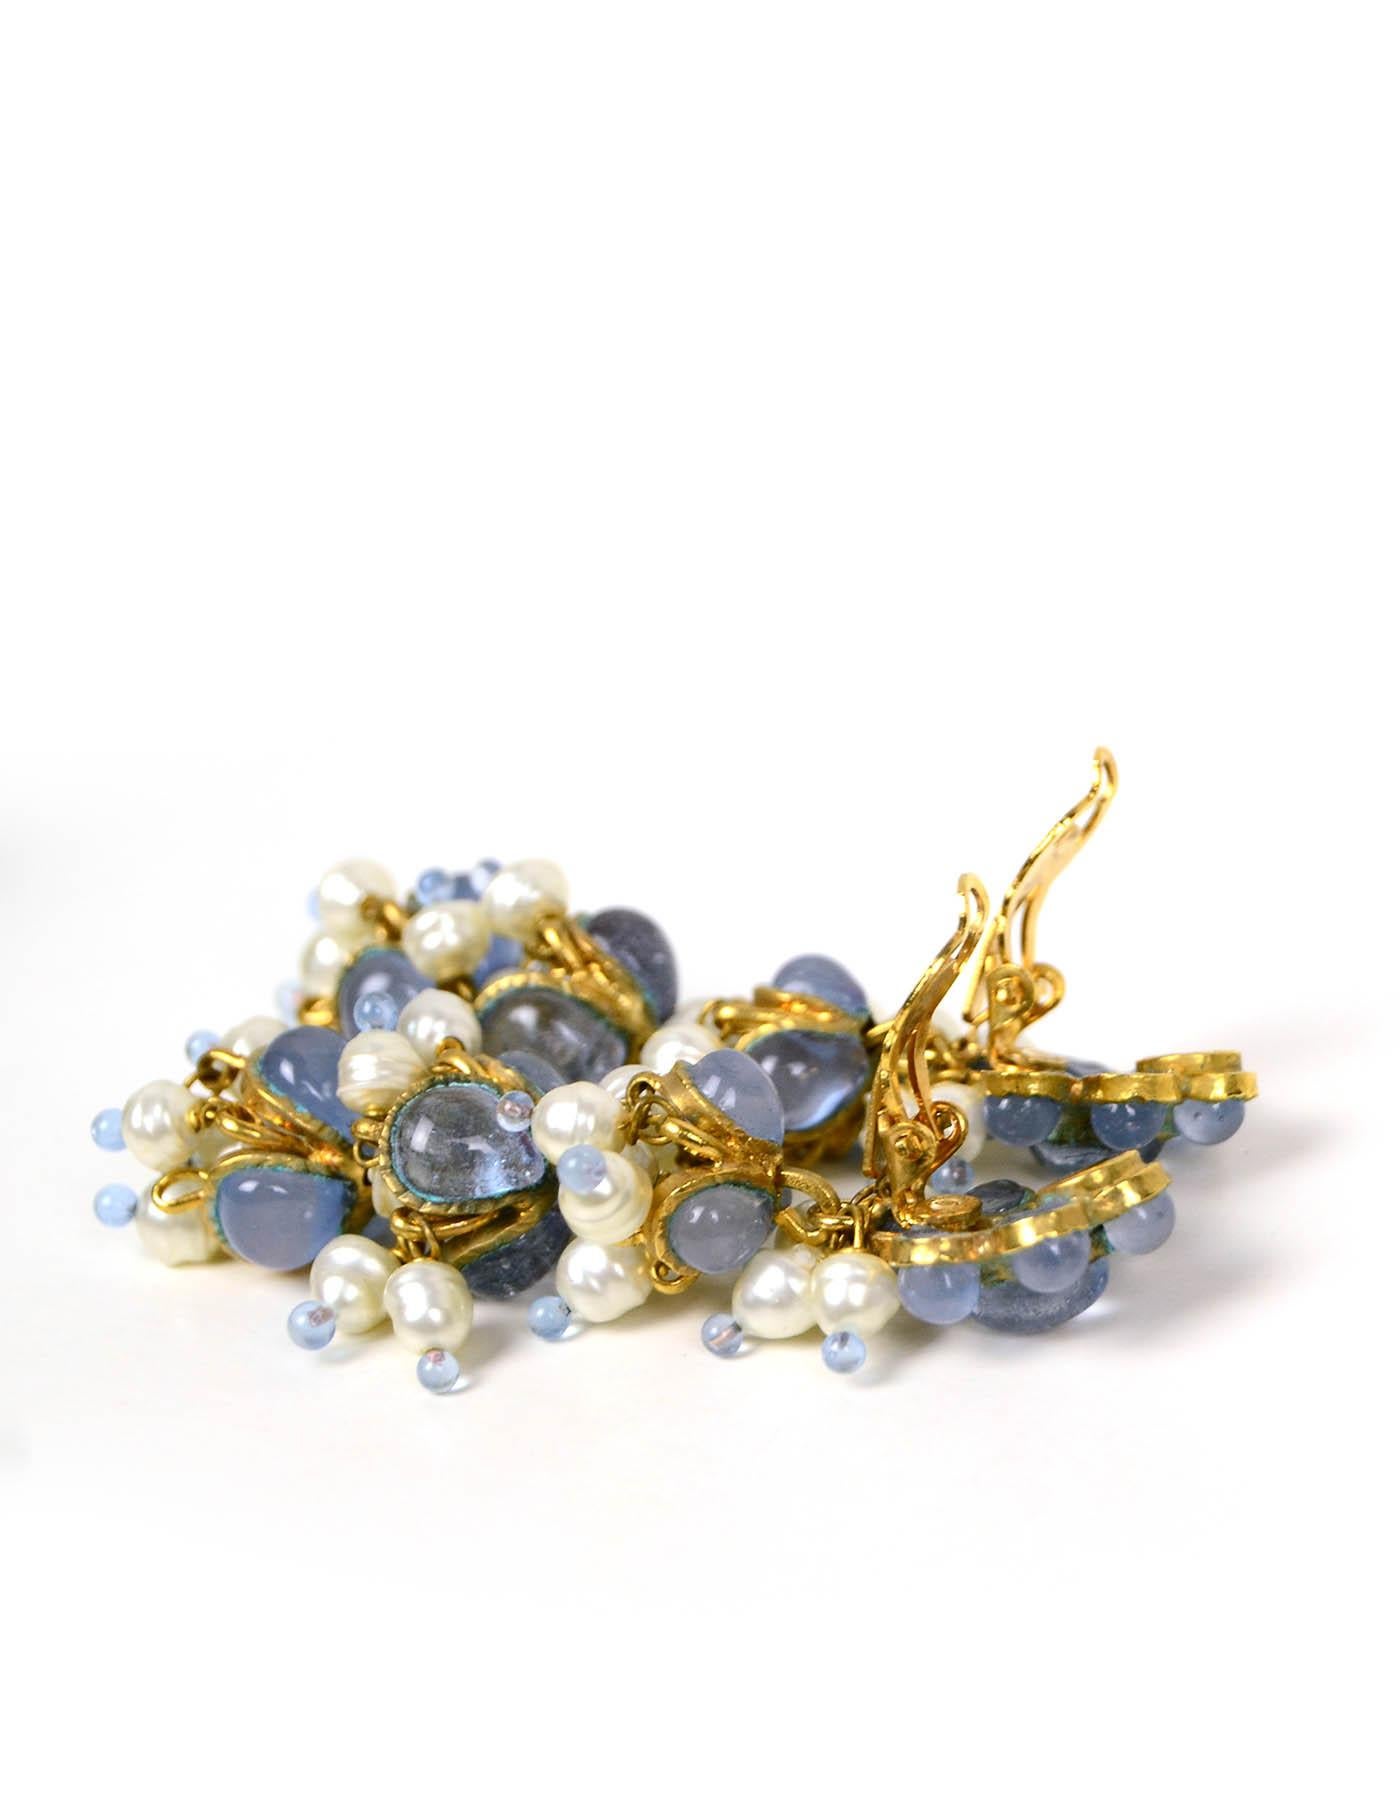 90s jewelry earrings